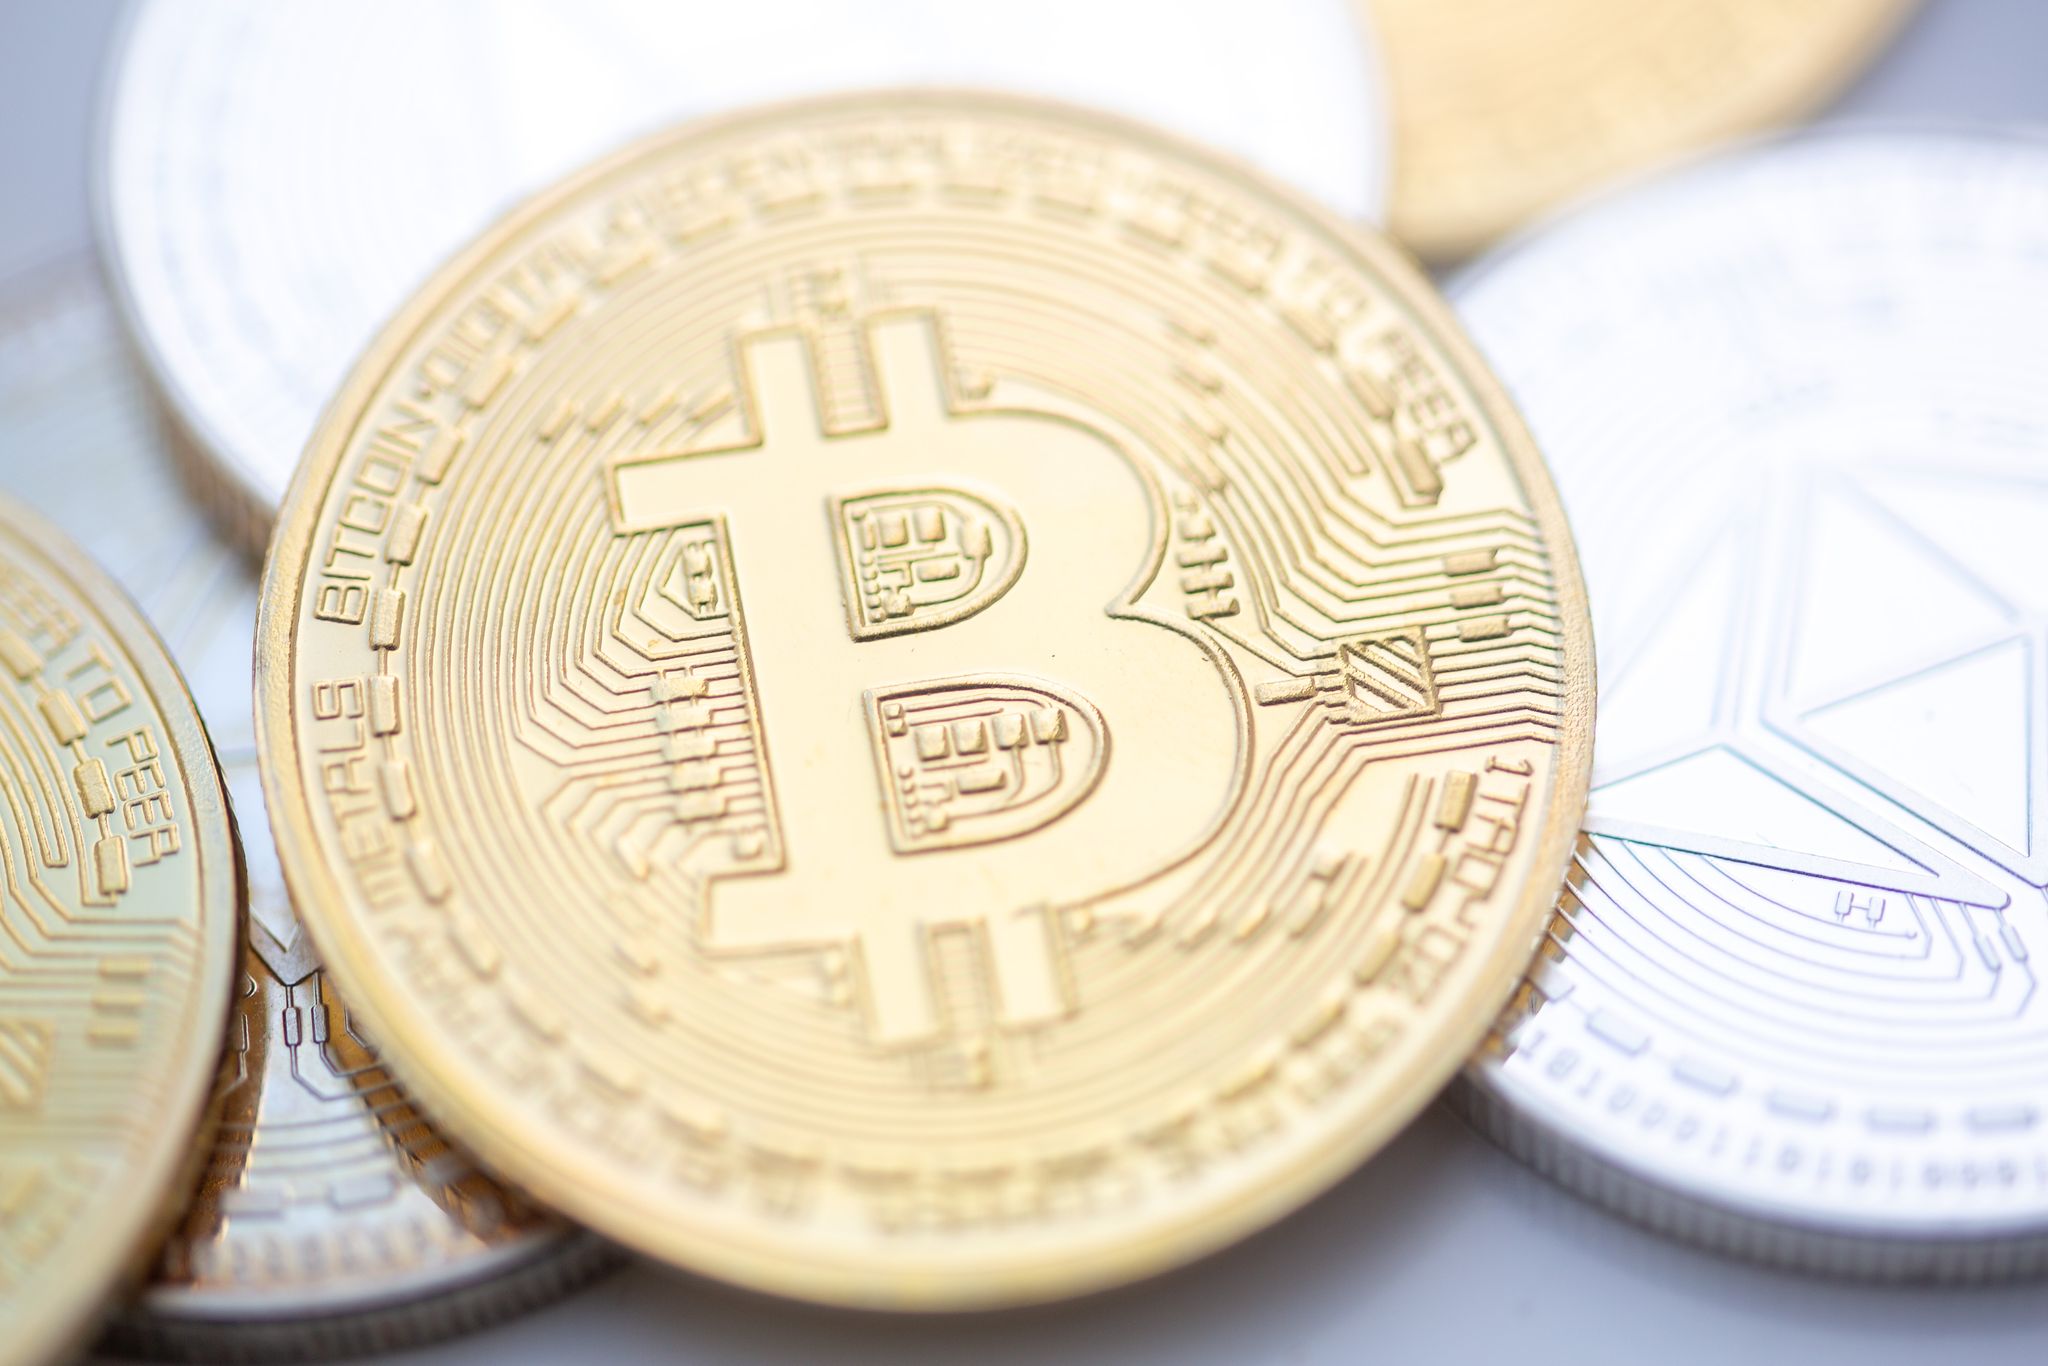 Krypto-Kurse sacken ab – Bitcoin fällt unter 58.000 Dollar